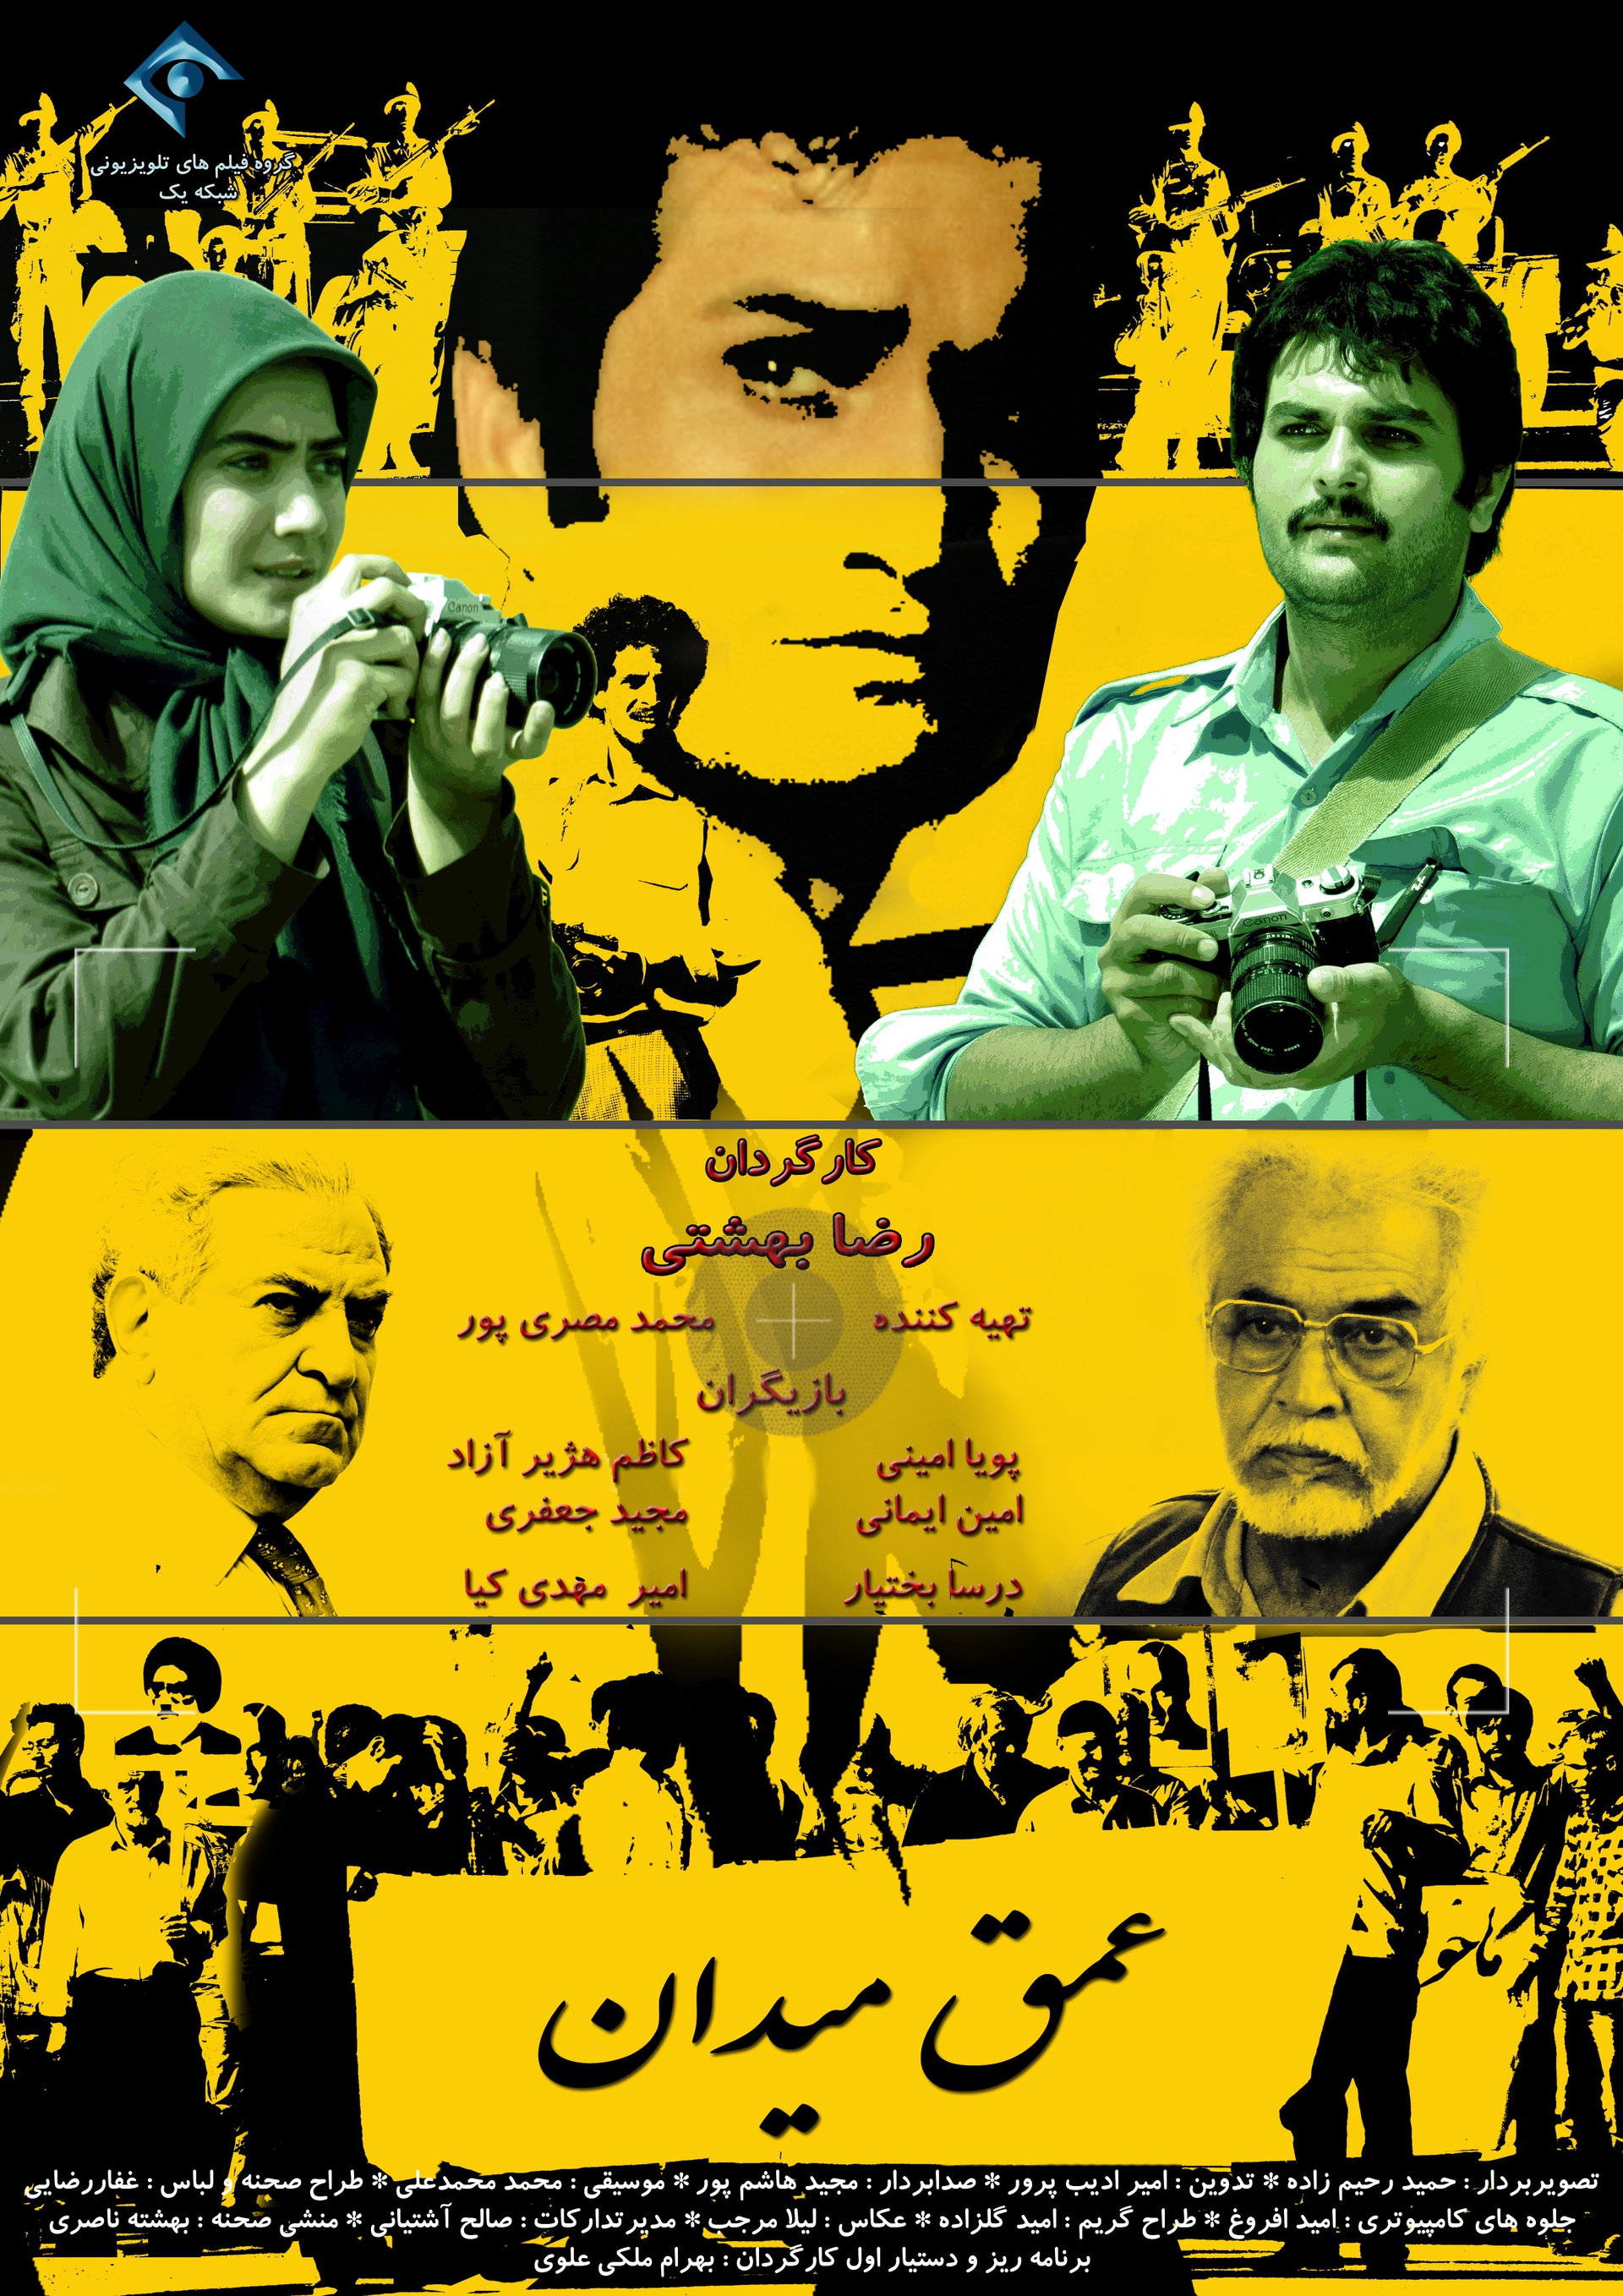 تصویری از رضا بهشتی، کارگردان و نویسنده سینما و تلویزیون در حال بازیگری سر صحنه یکی از آثارش